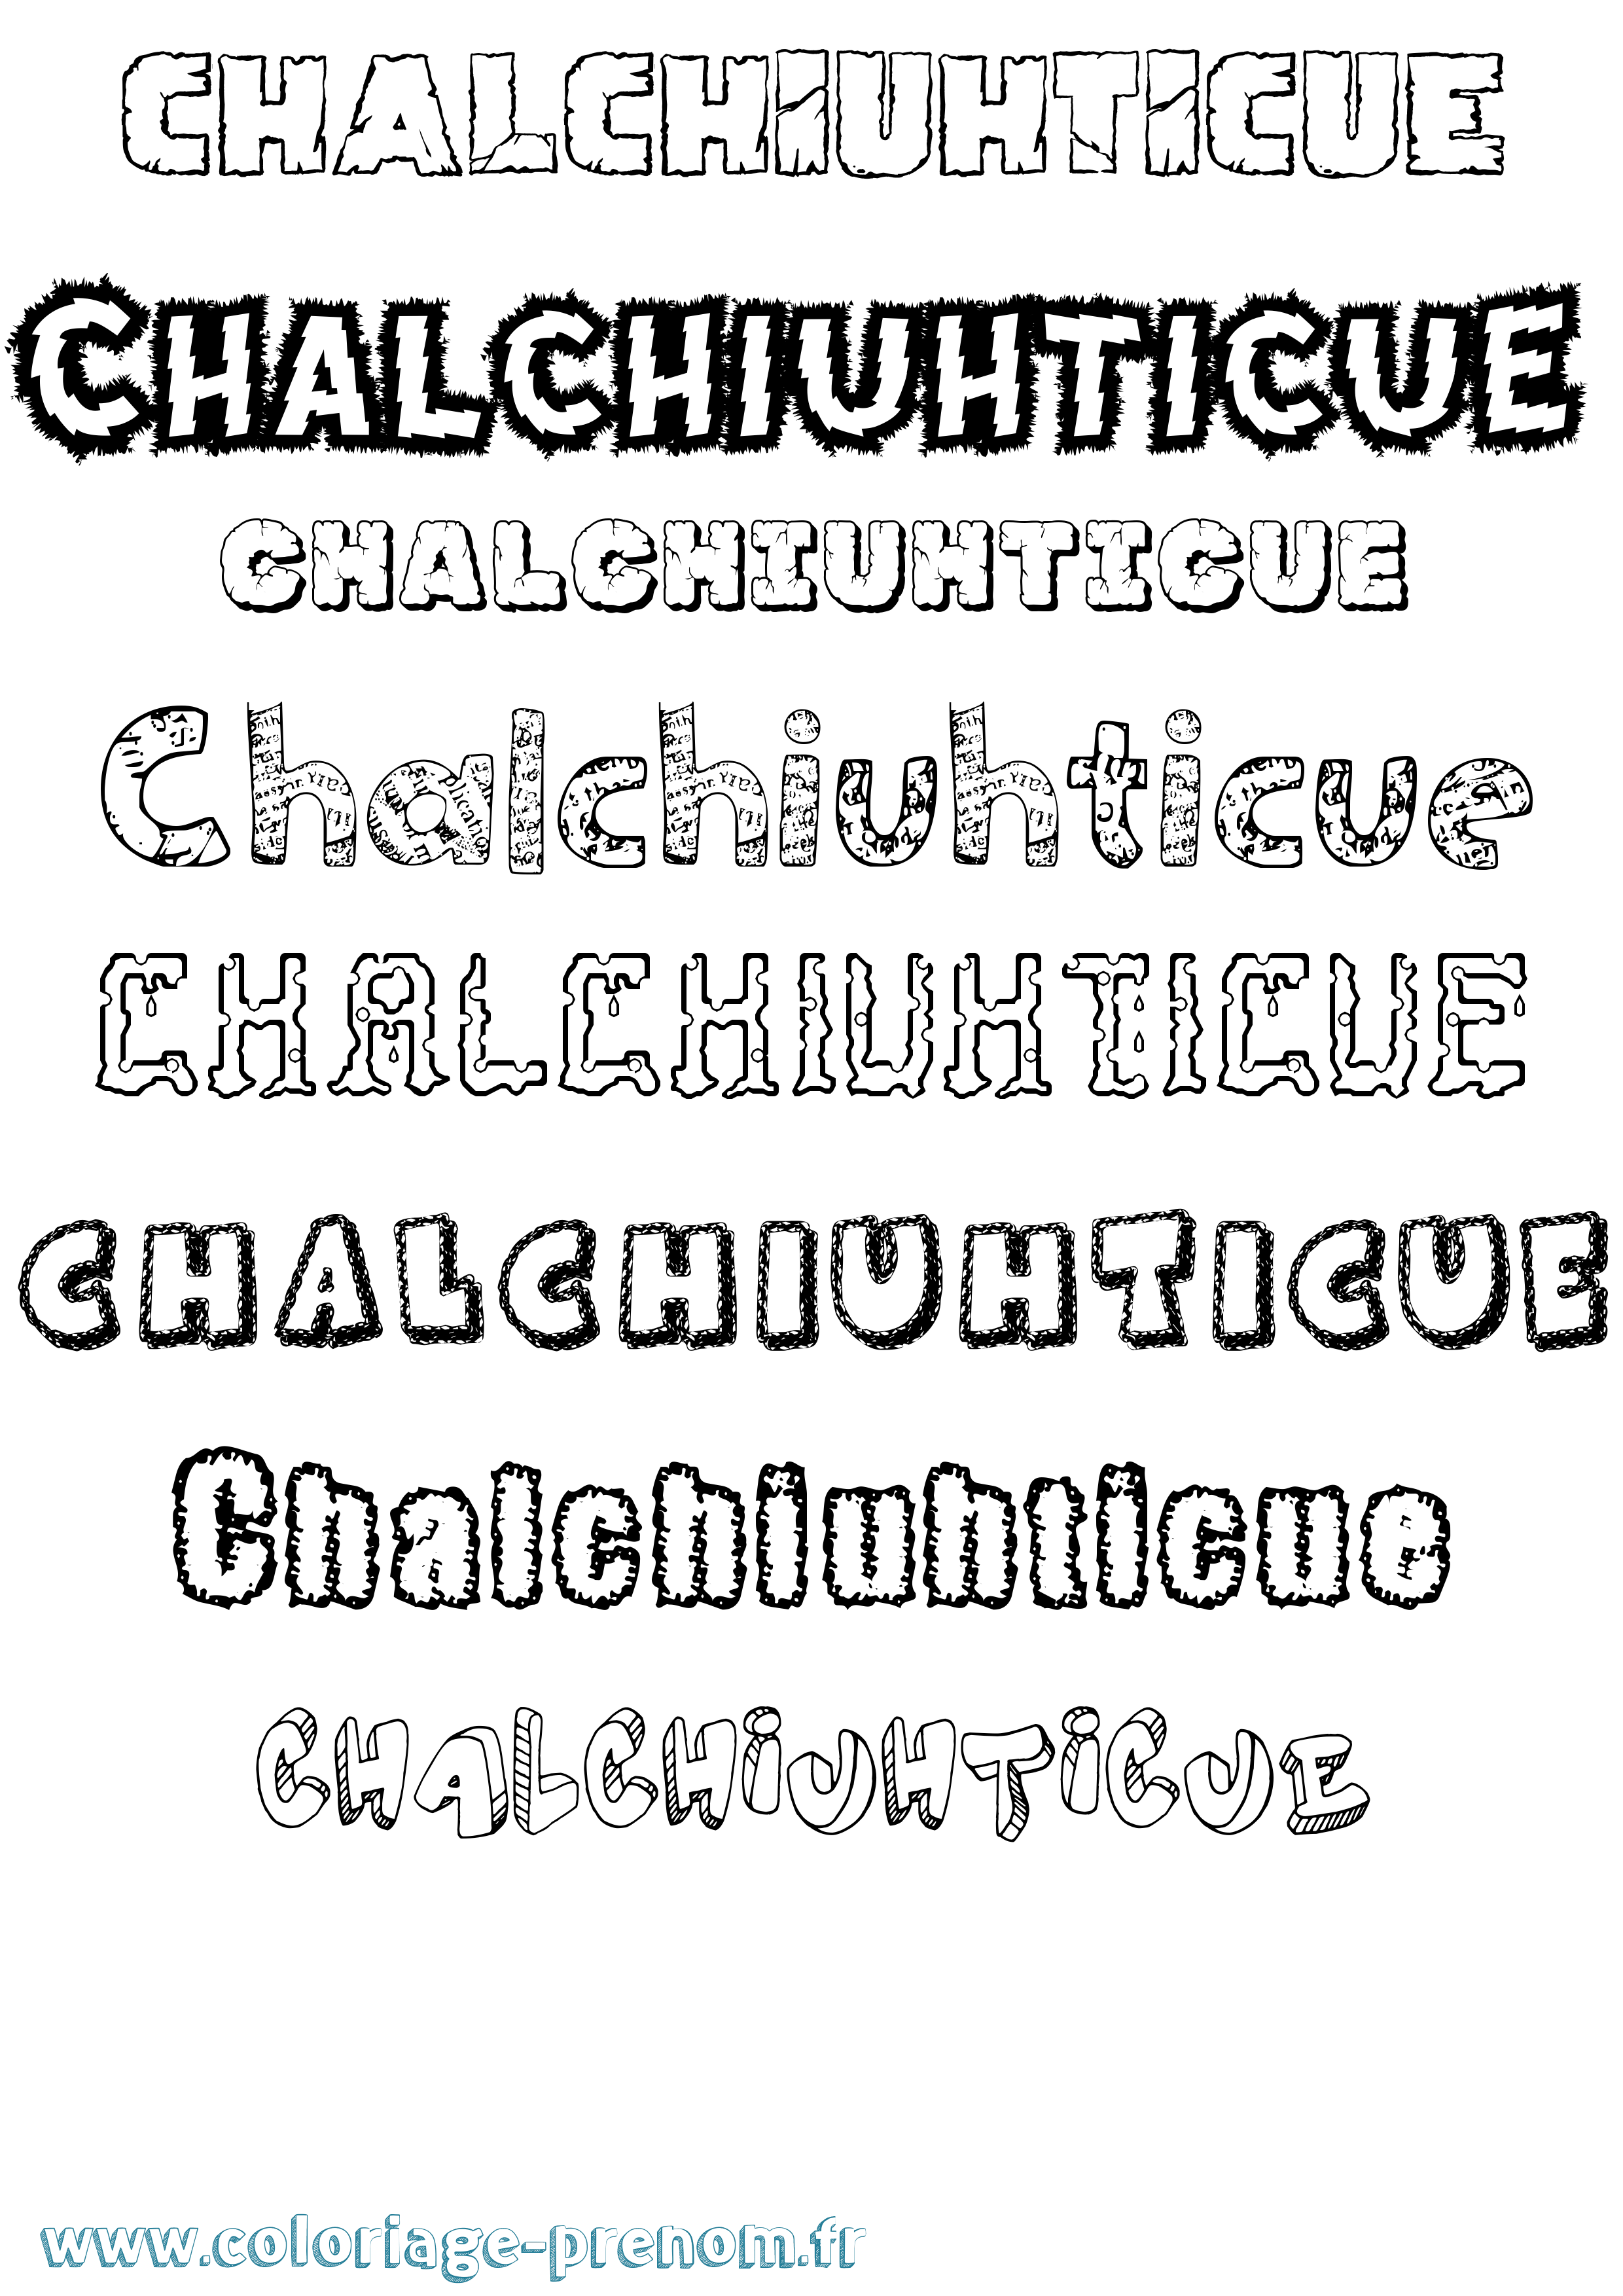 Coloriage prénom Chalchiuhticue Destructuré